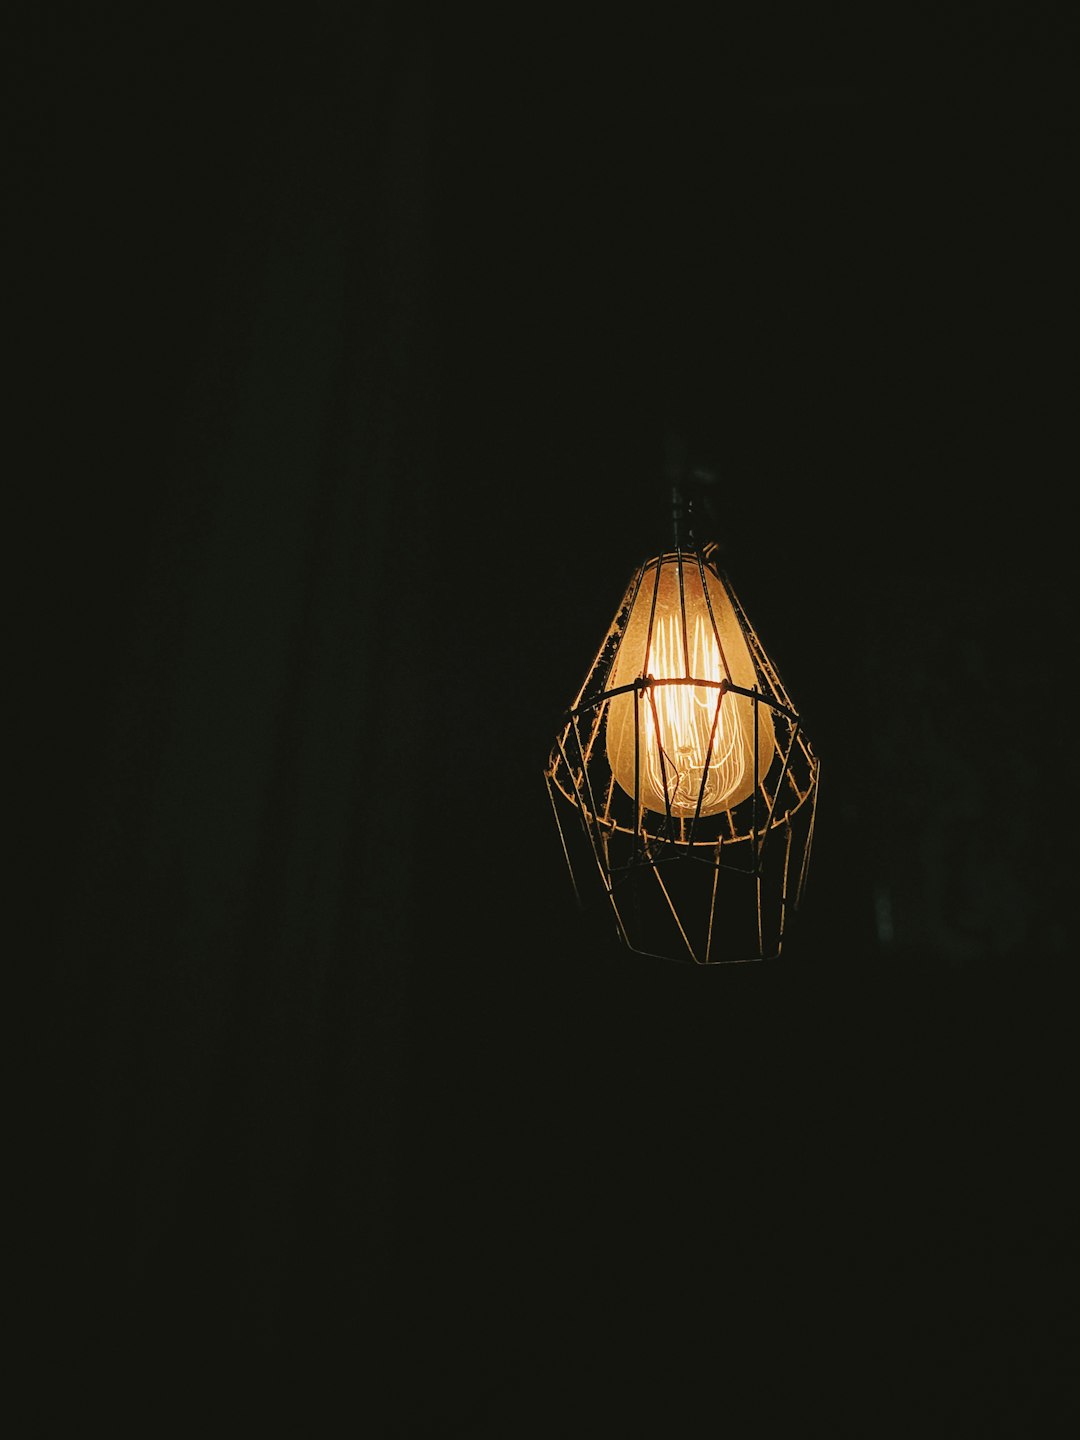 turned-on pendant lamp at dark room